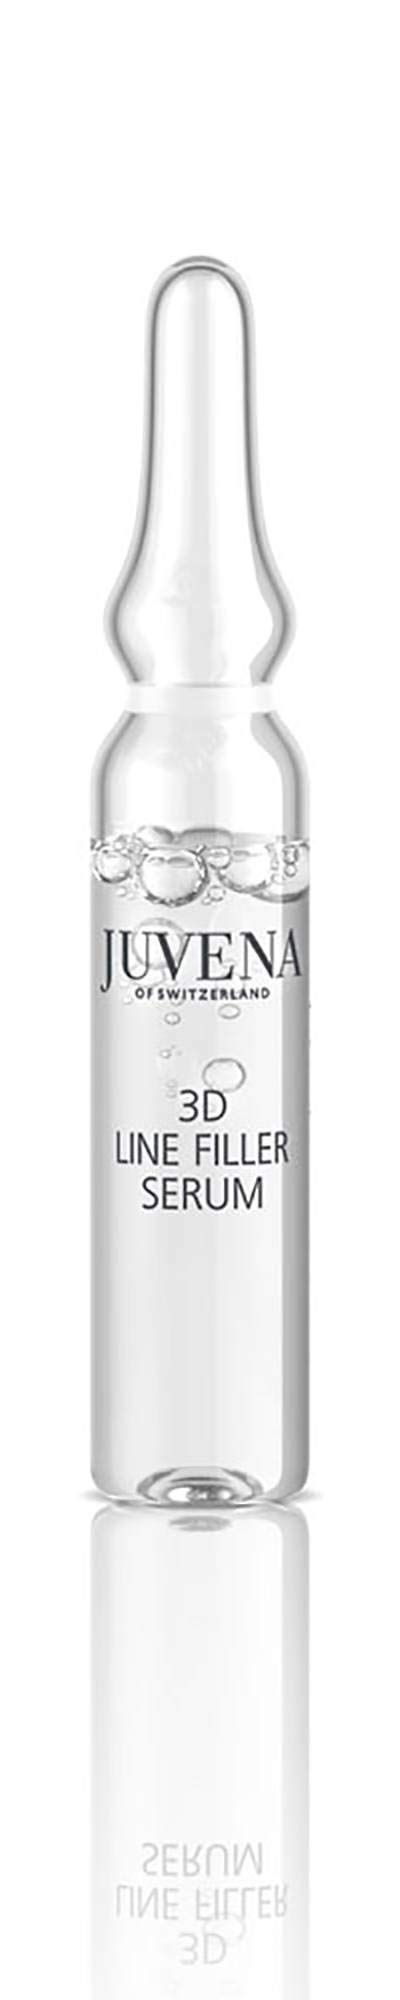 Juvena Skin Specialists 3D Line Filler Serum Gesichtsserum, 14 ml